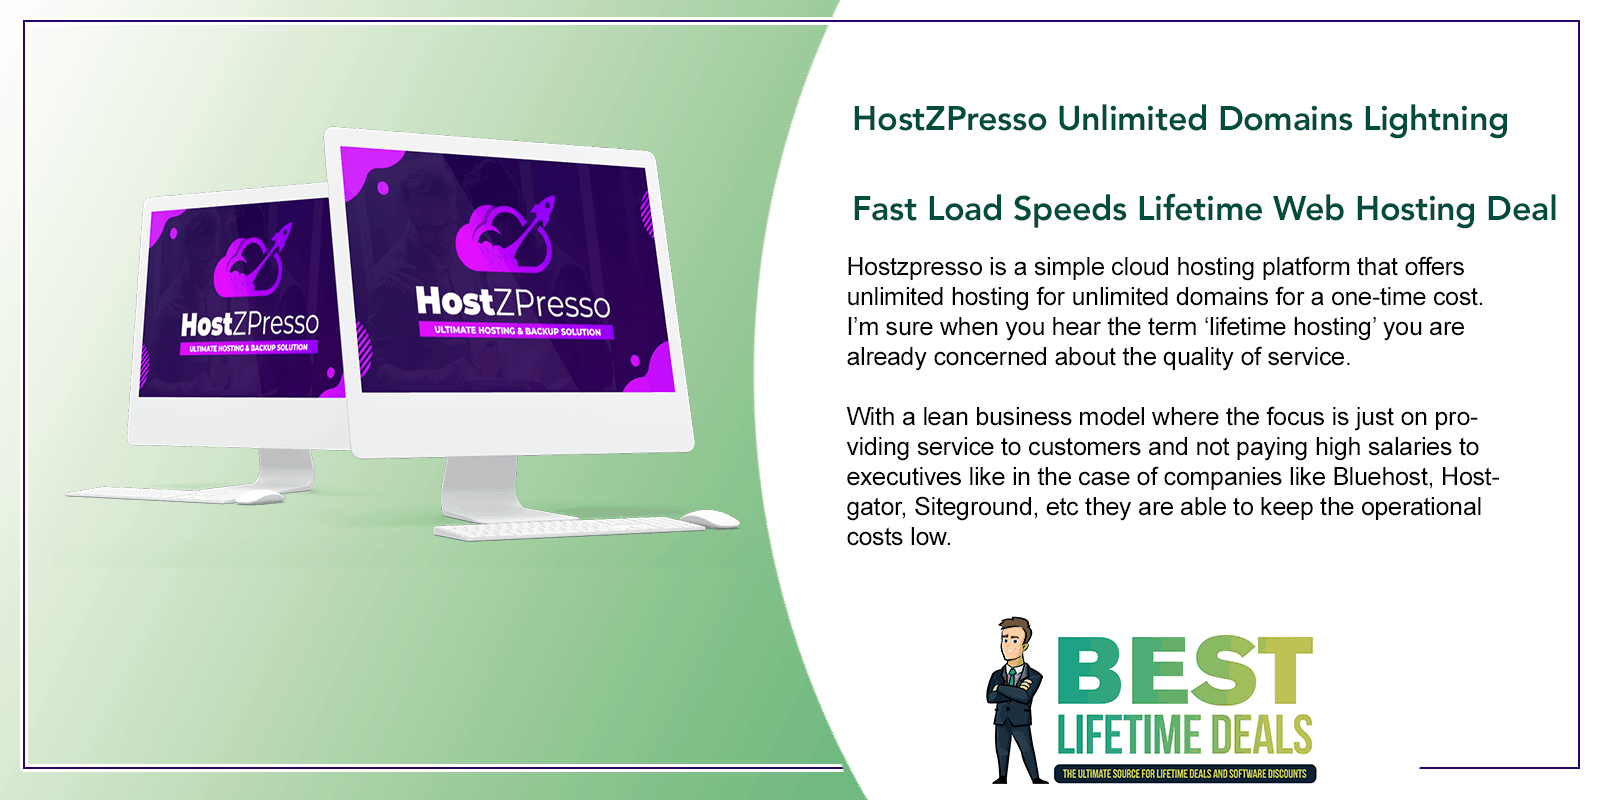 HostZPresso Unlimited Domains Lightning Fast Load Speeds Featured Image